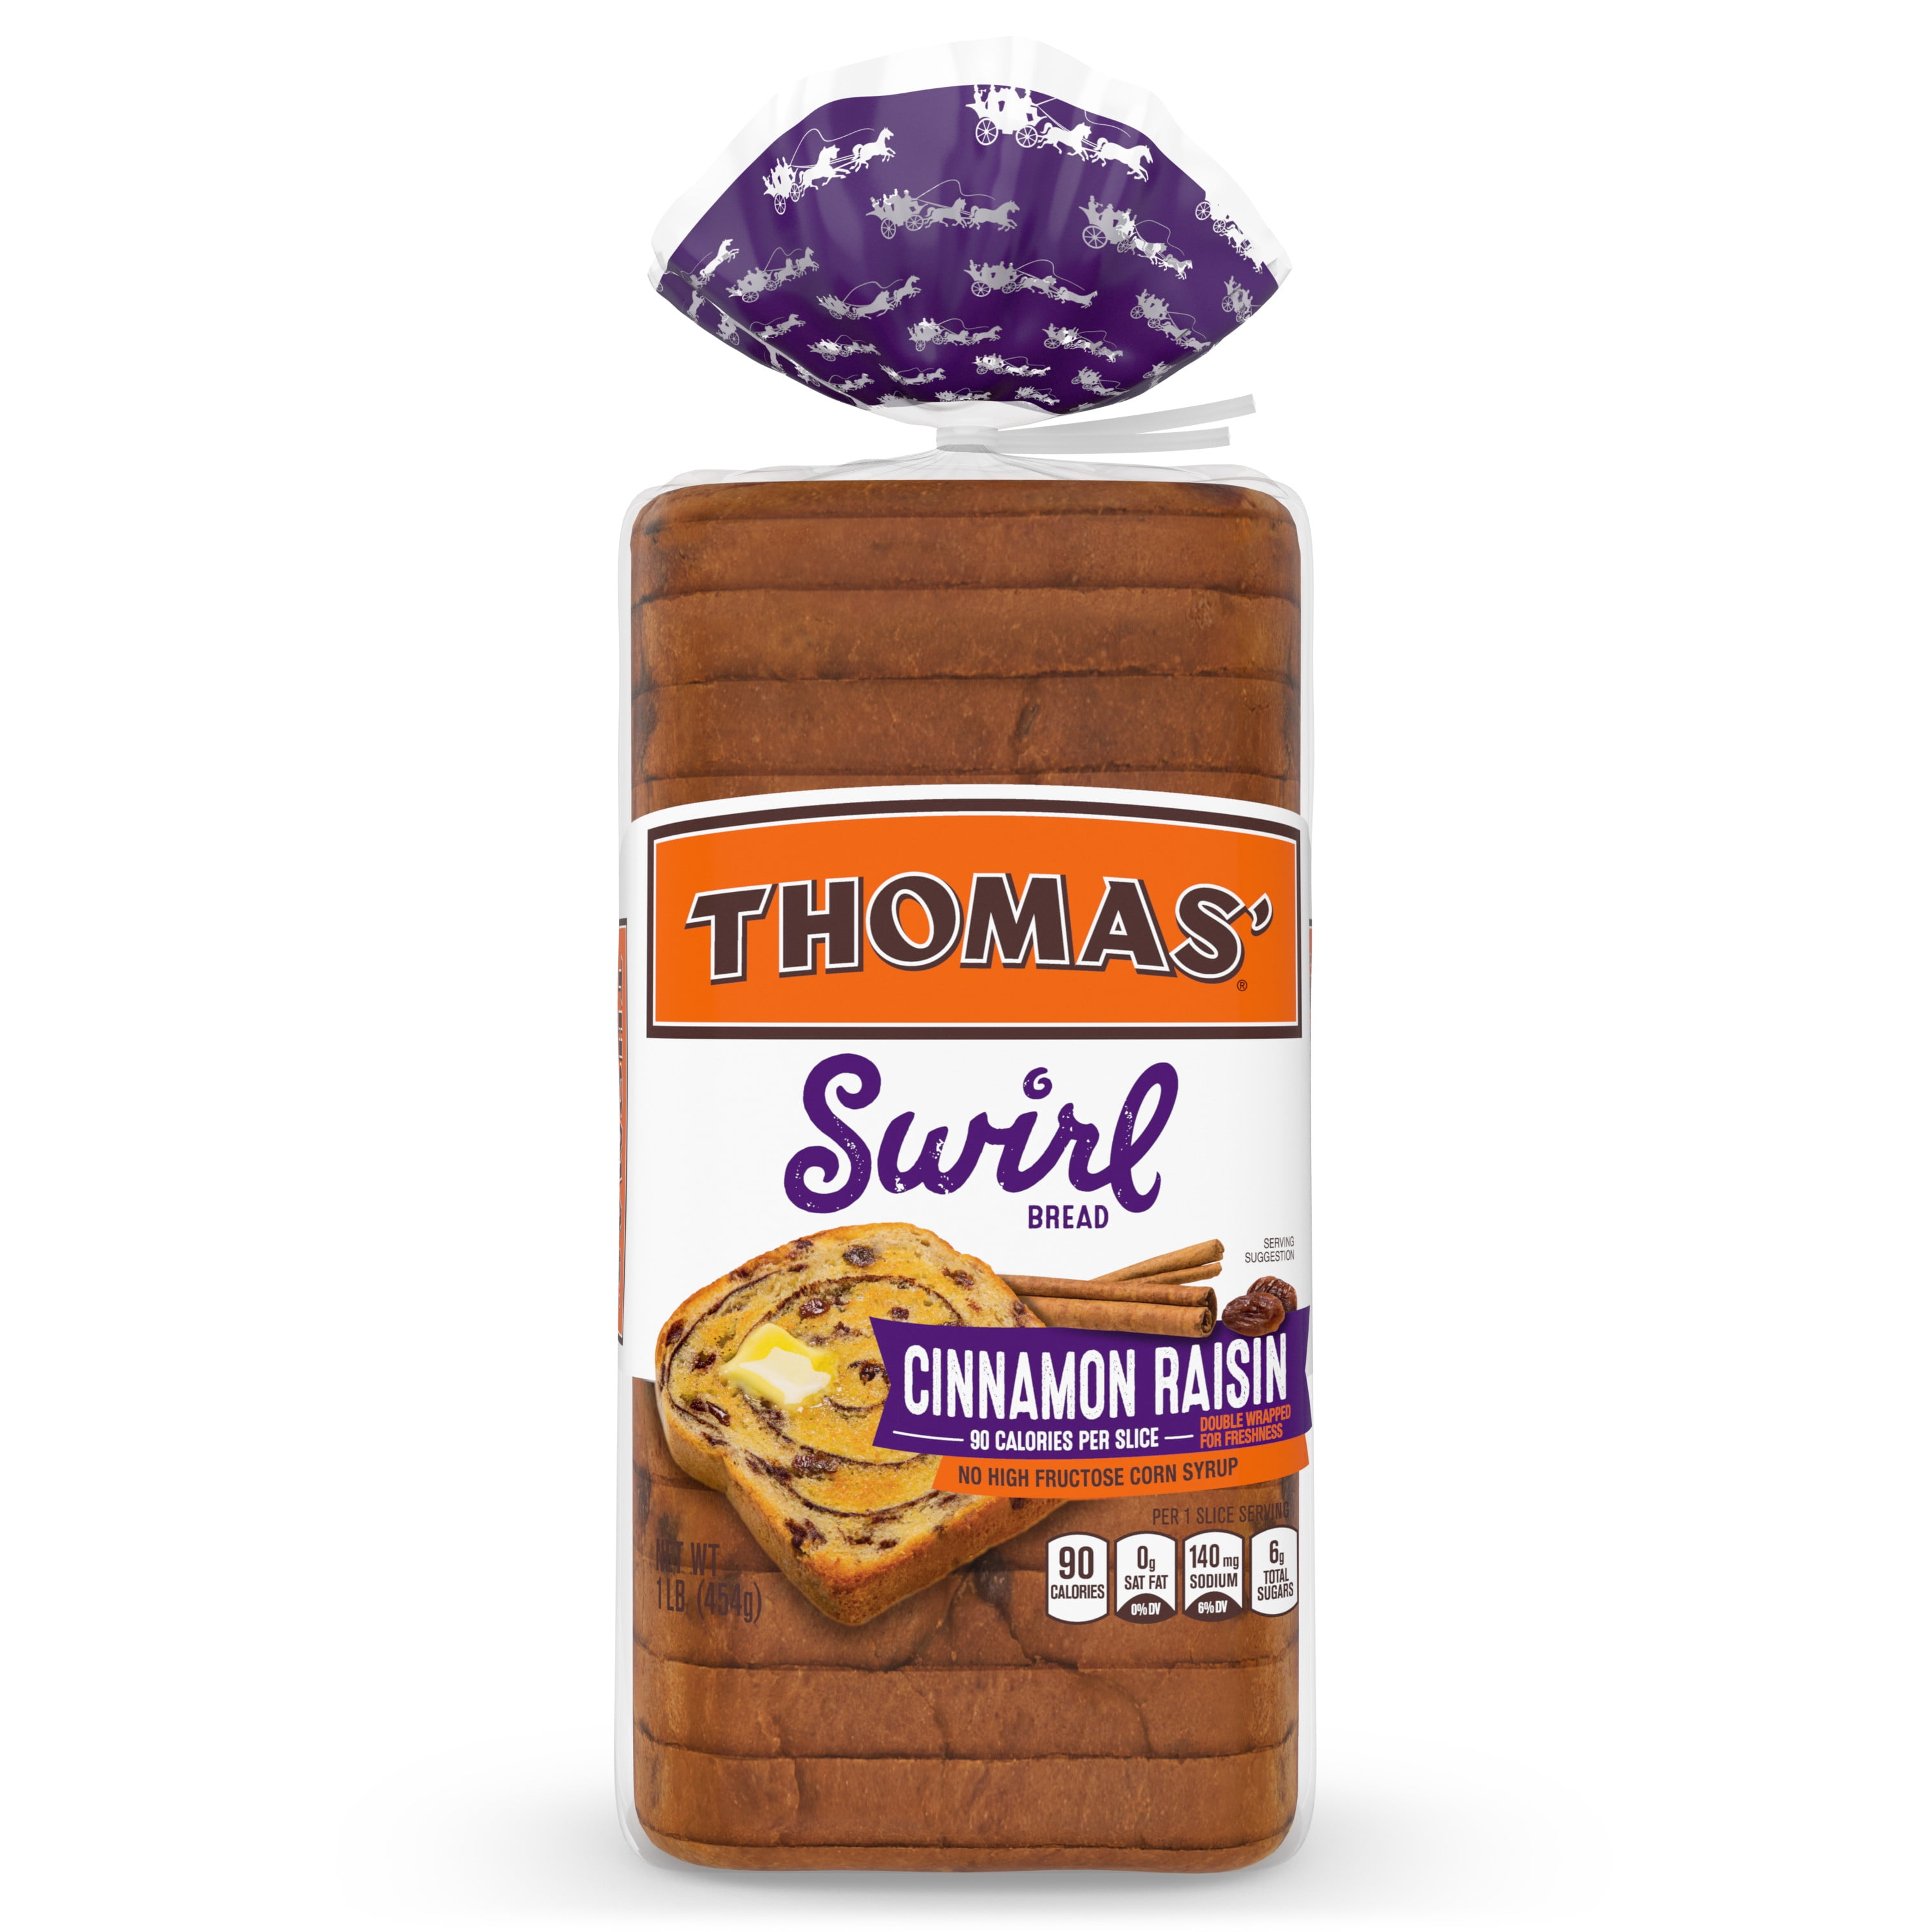 Thomas Cinnamon Raisin Swirl Bread, 16 Oz Cinnamon Raisin Bread